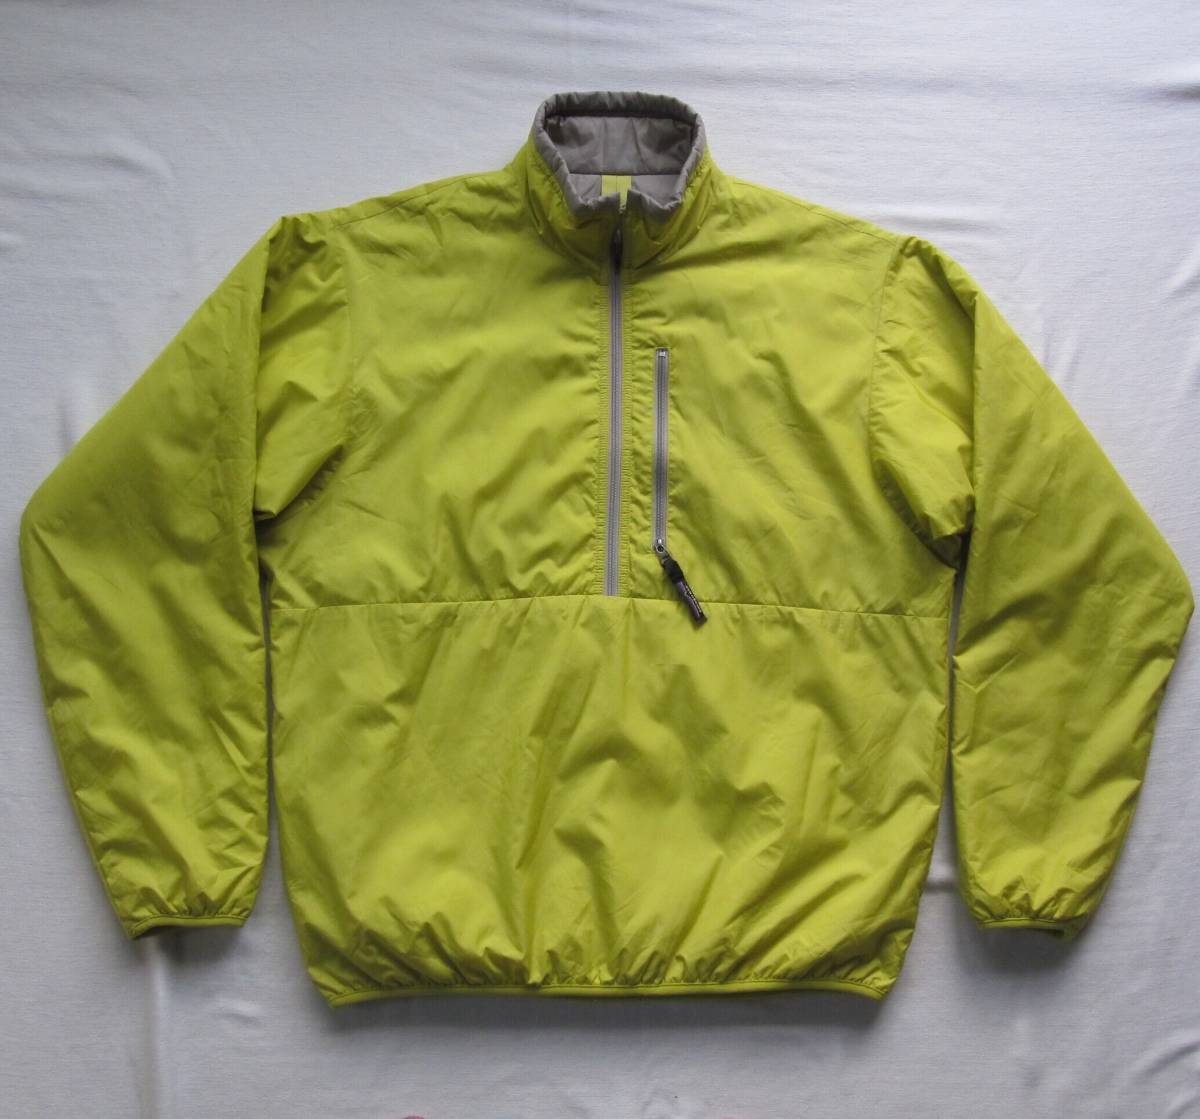 ☆2001 パタゴニア パフボール プルオーバー（M）green spark / patagonia puffball USA製 90s vintage ジャケット ビンテージ ダスパーカ